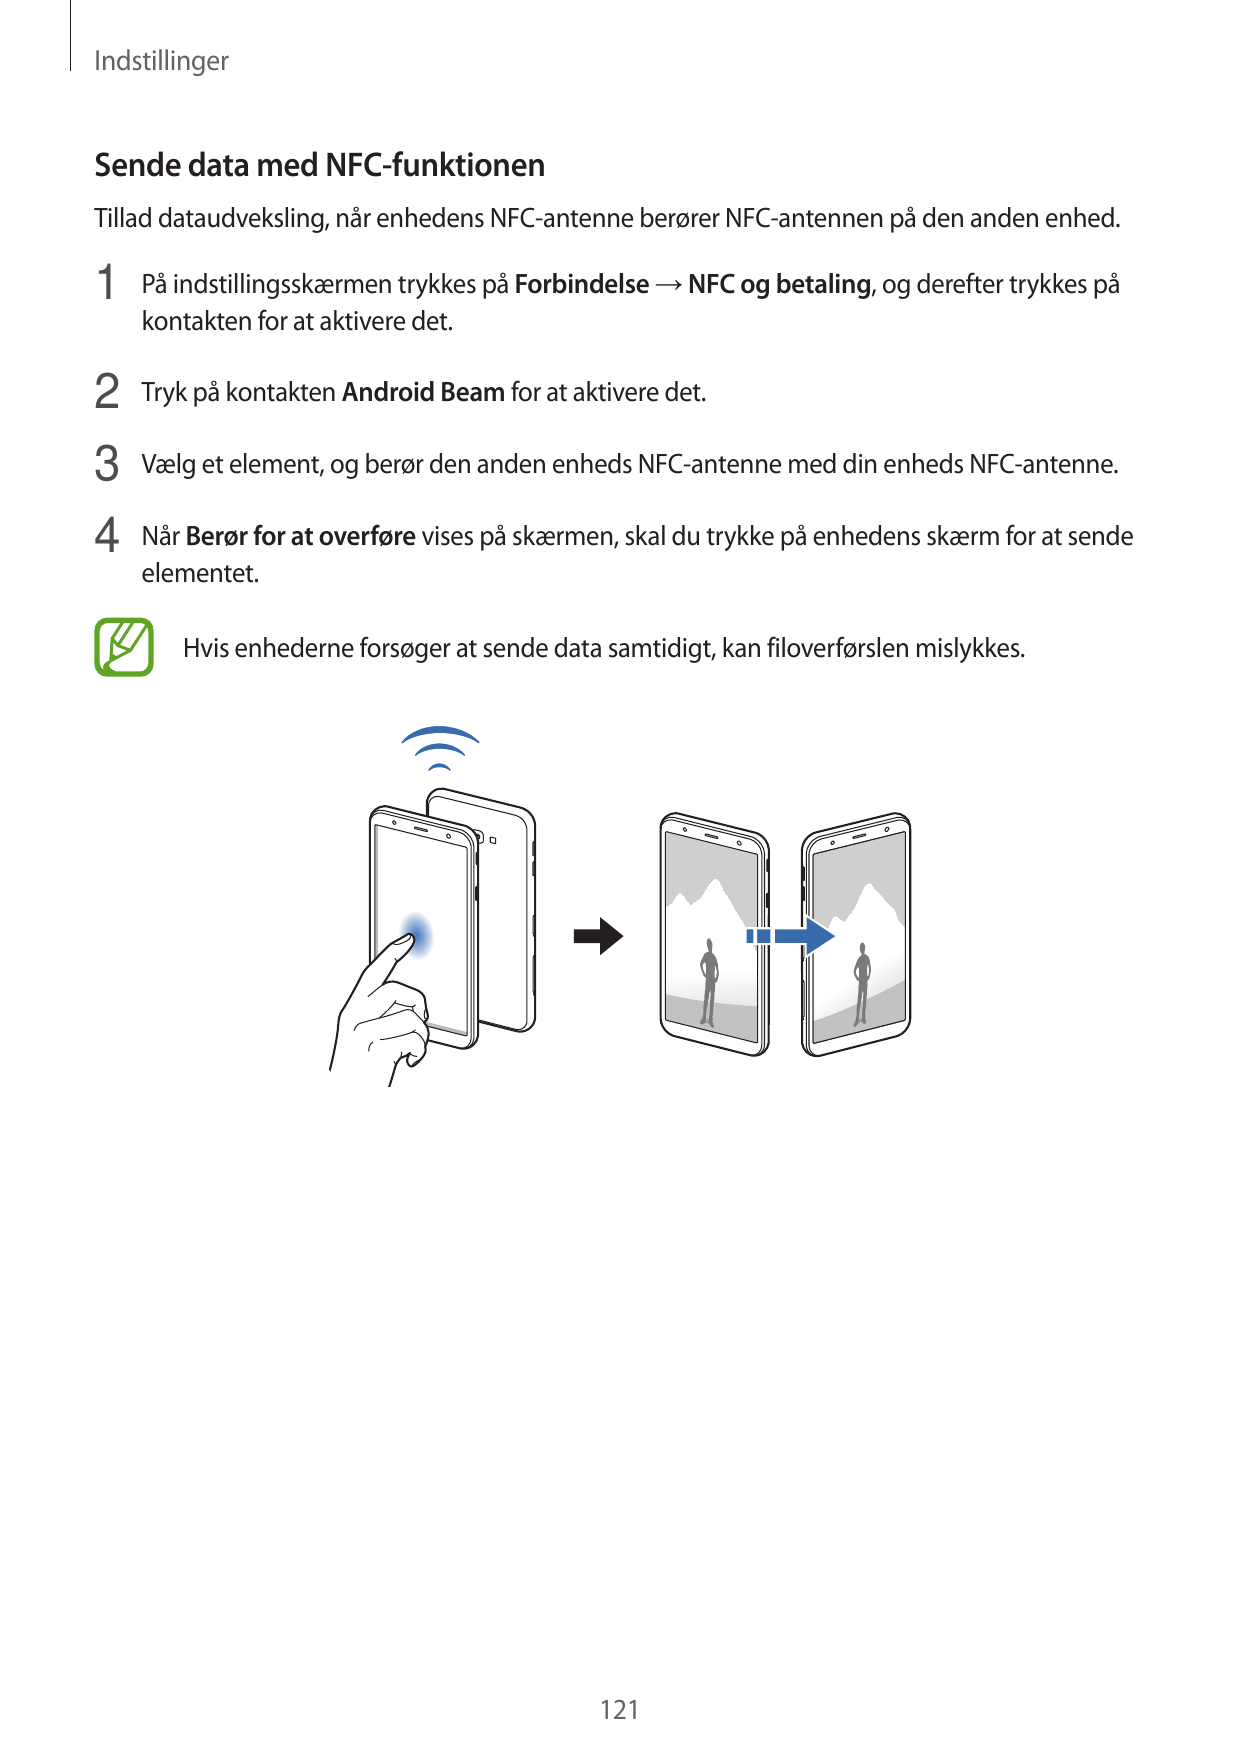 IndstillingerSende data med NFC-funktionenTillad dataudveksling, når enhedens NFC-antenne berører NFC-antennen på den anden enhe